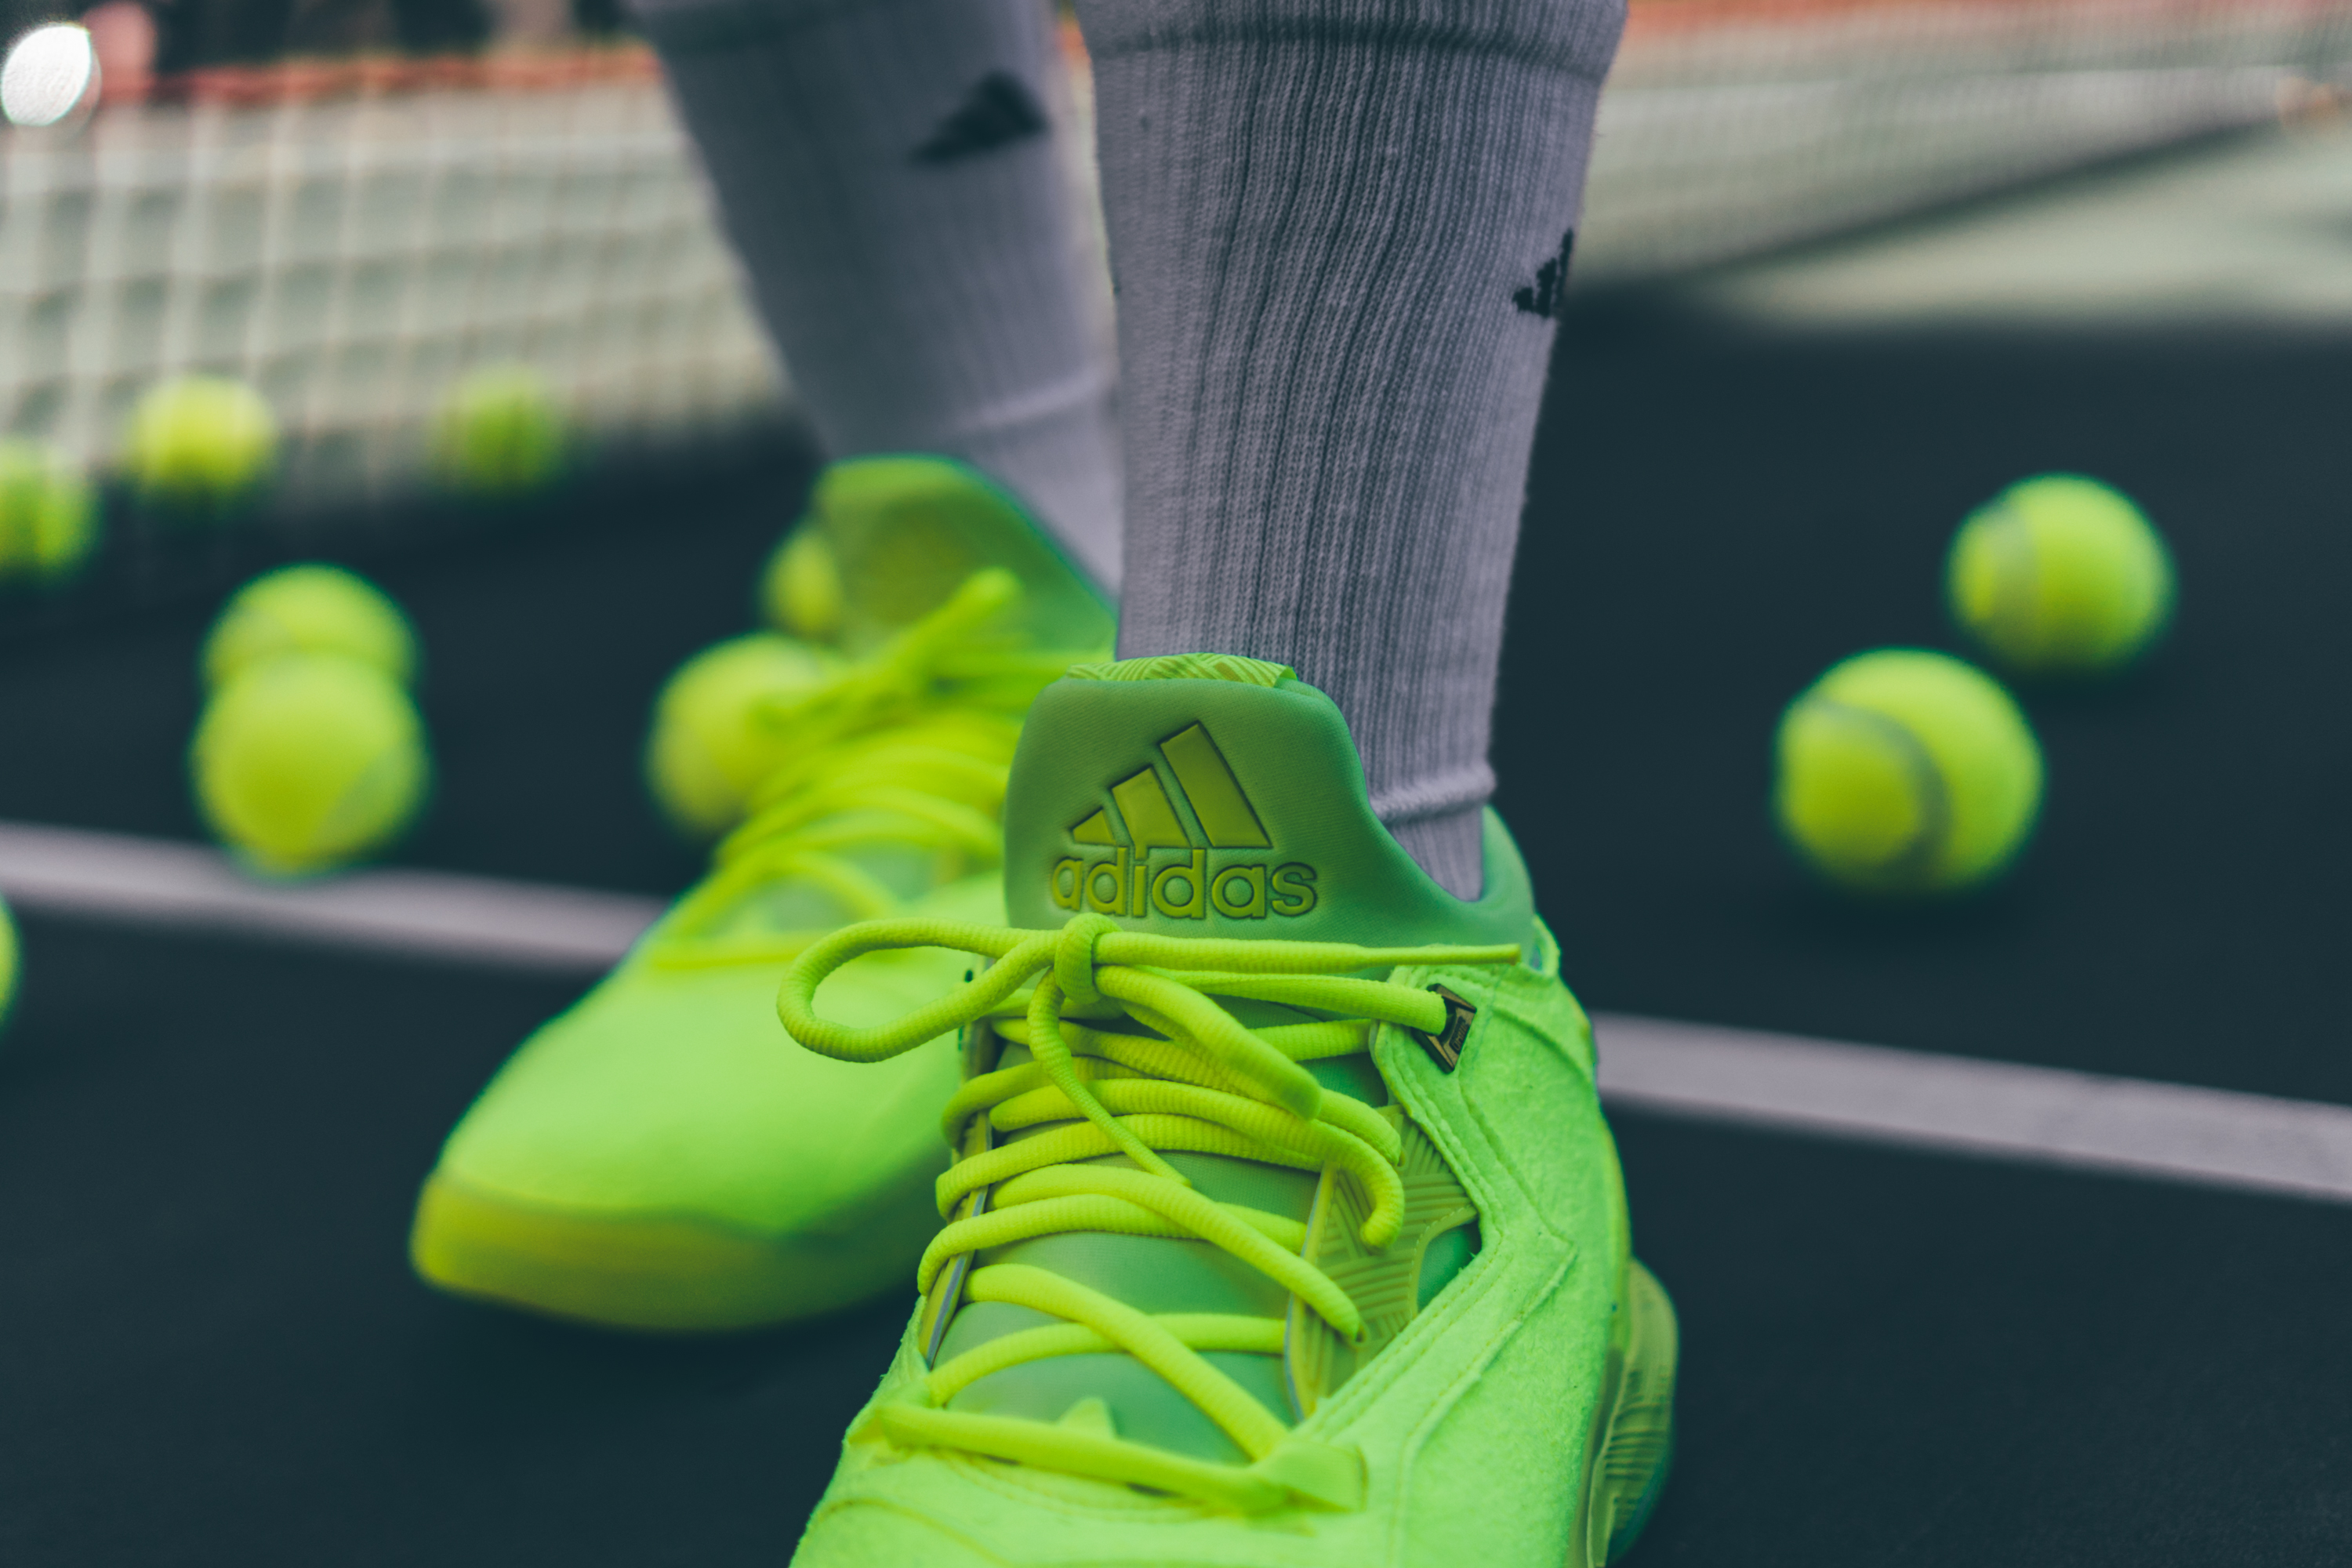 Adidas D Lillard 2 Tennis Ball | Sole Collector